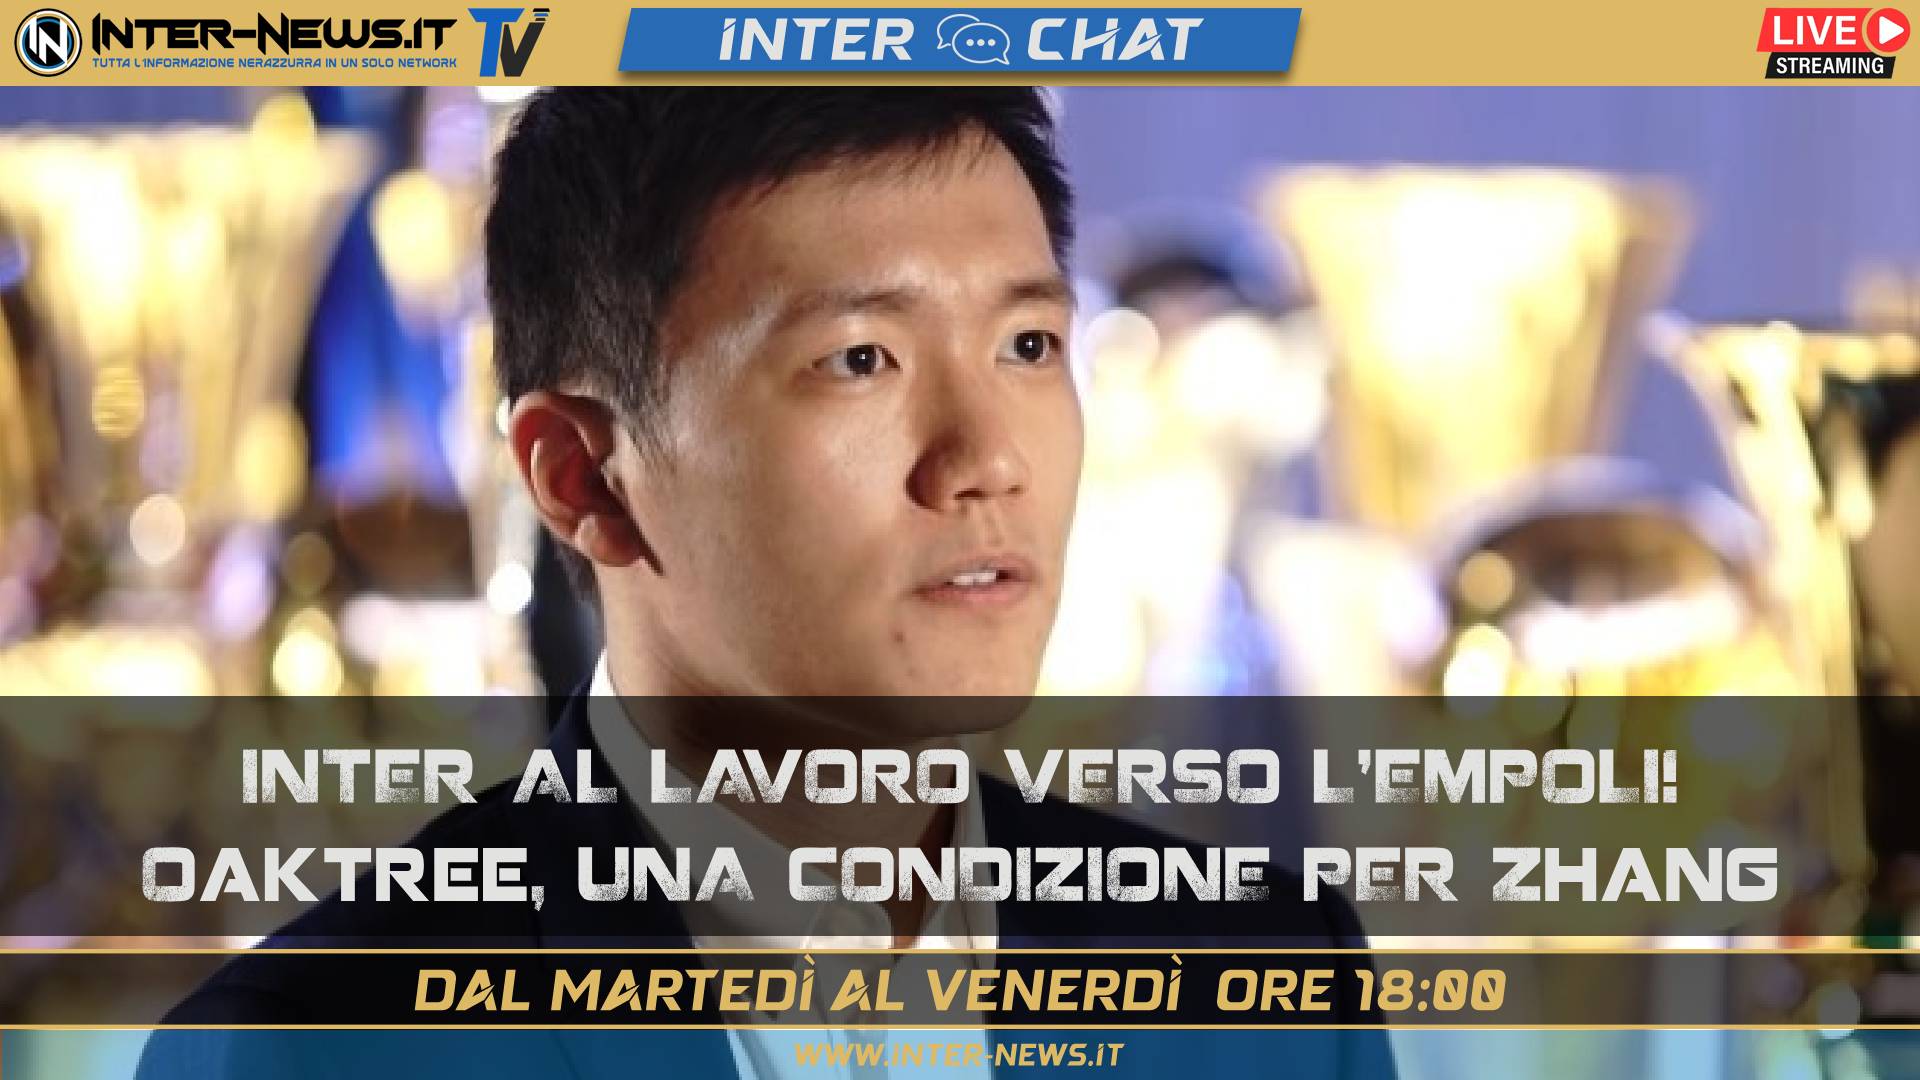 VIDEO – Inter, testa all’Empoli! Cosa succede tra Zhang e Oaktree? | Inter Chat